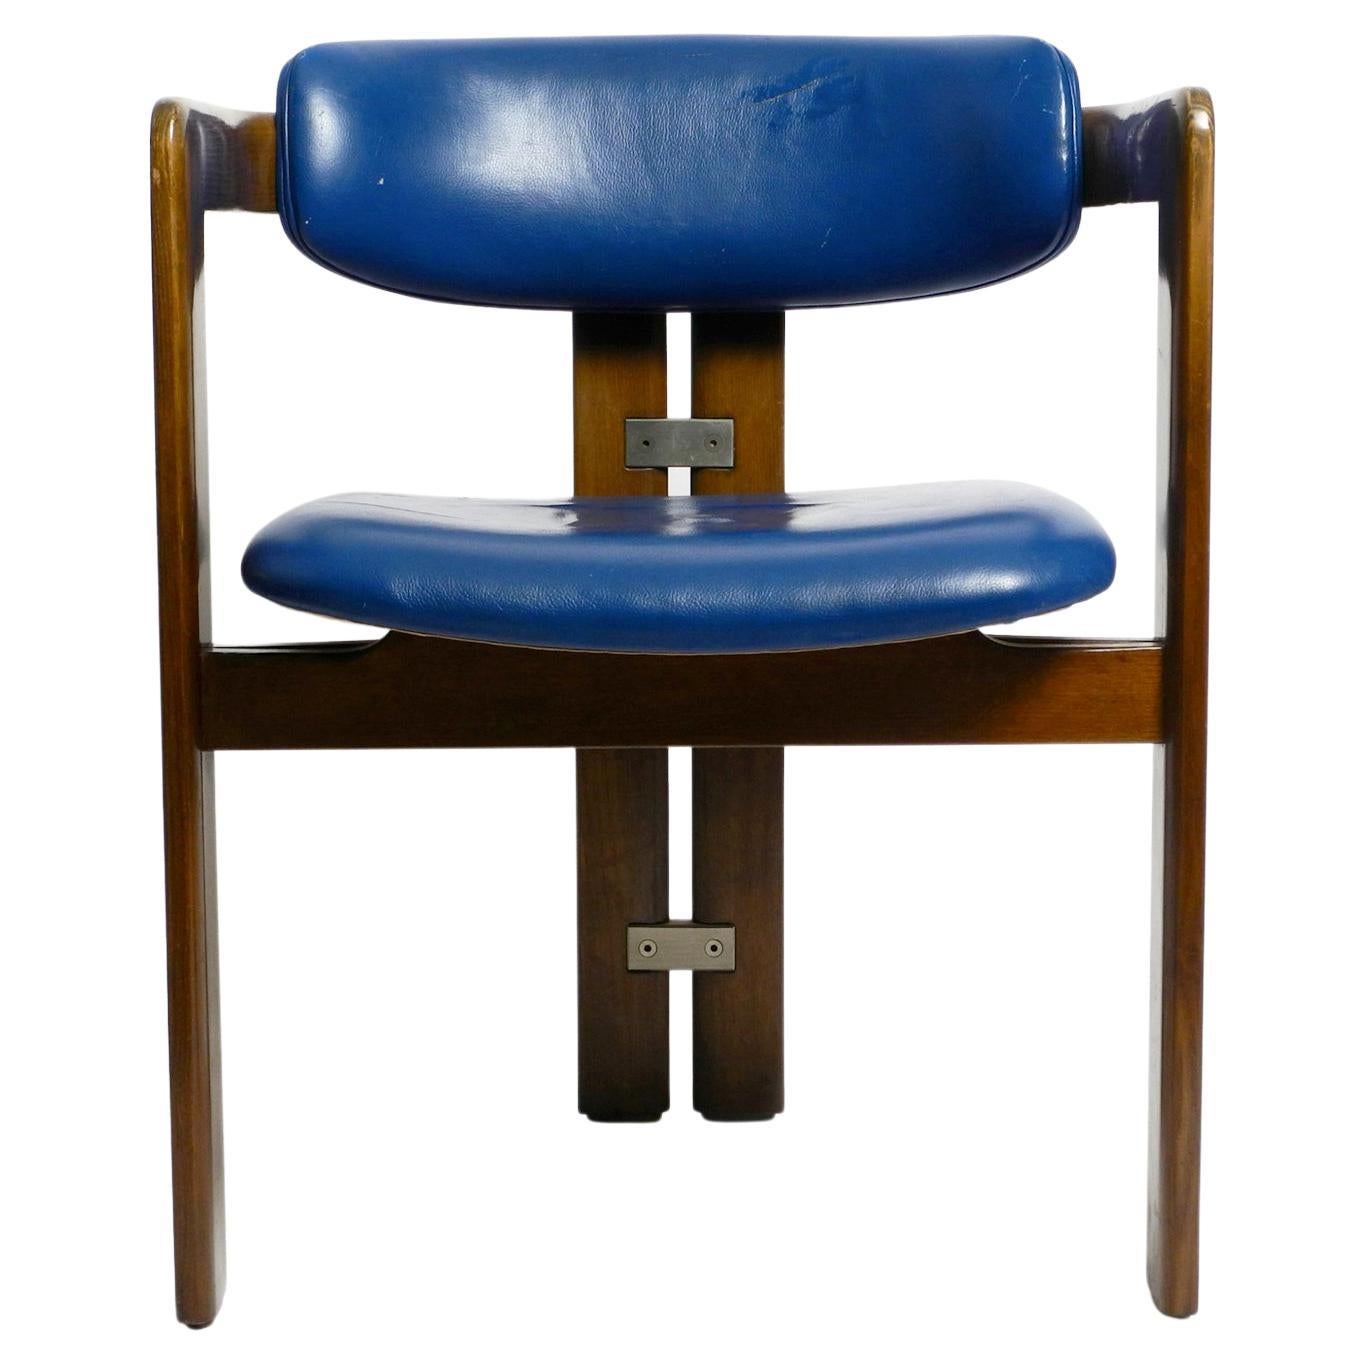 Chaise Pamplona d'Augusto Savini pour Pozzi, tapissée de cuir bleu